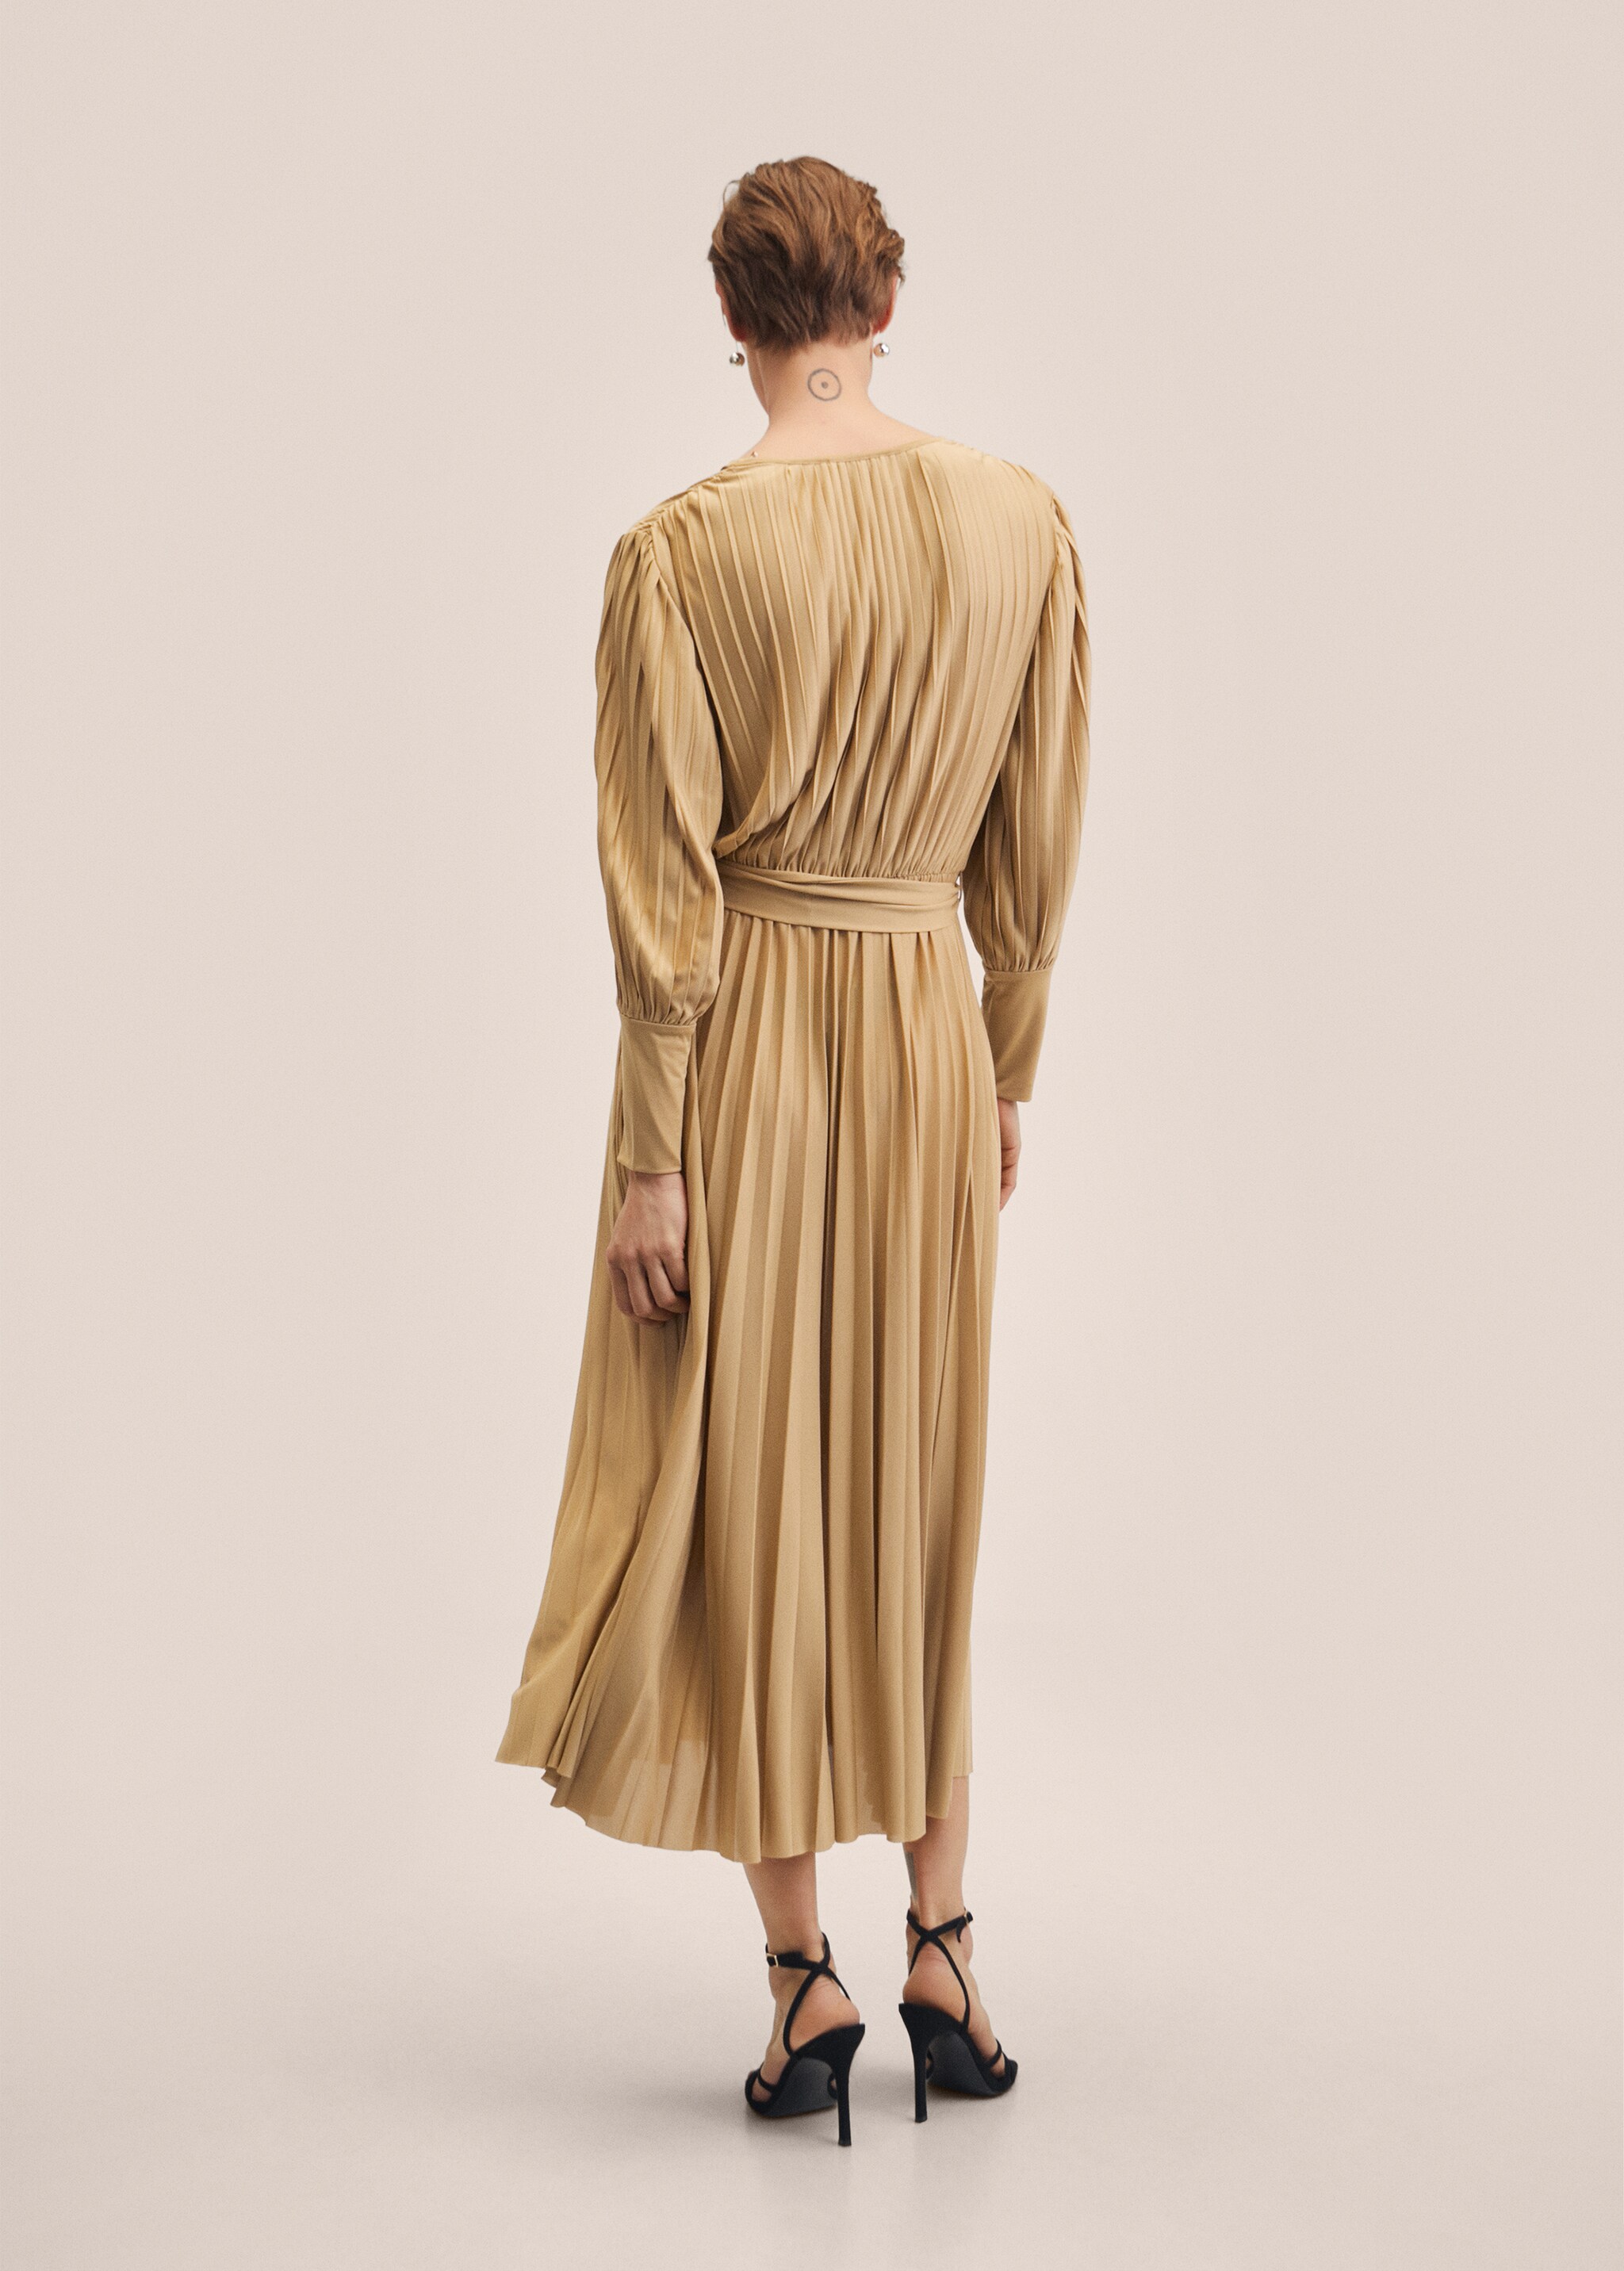 Φόρεμα πλισέ με ζώνη - Πίσω όψη προϊόντος